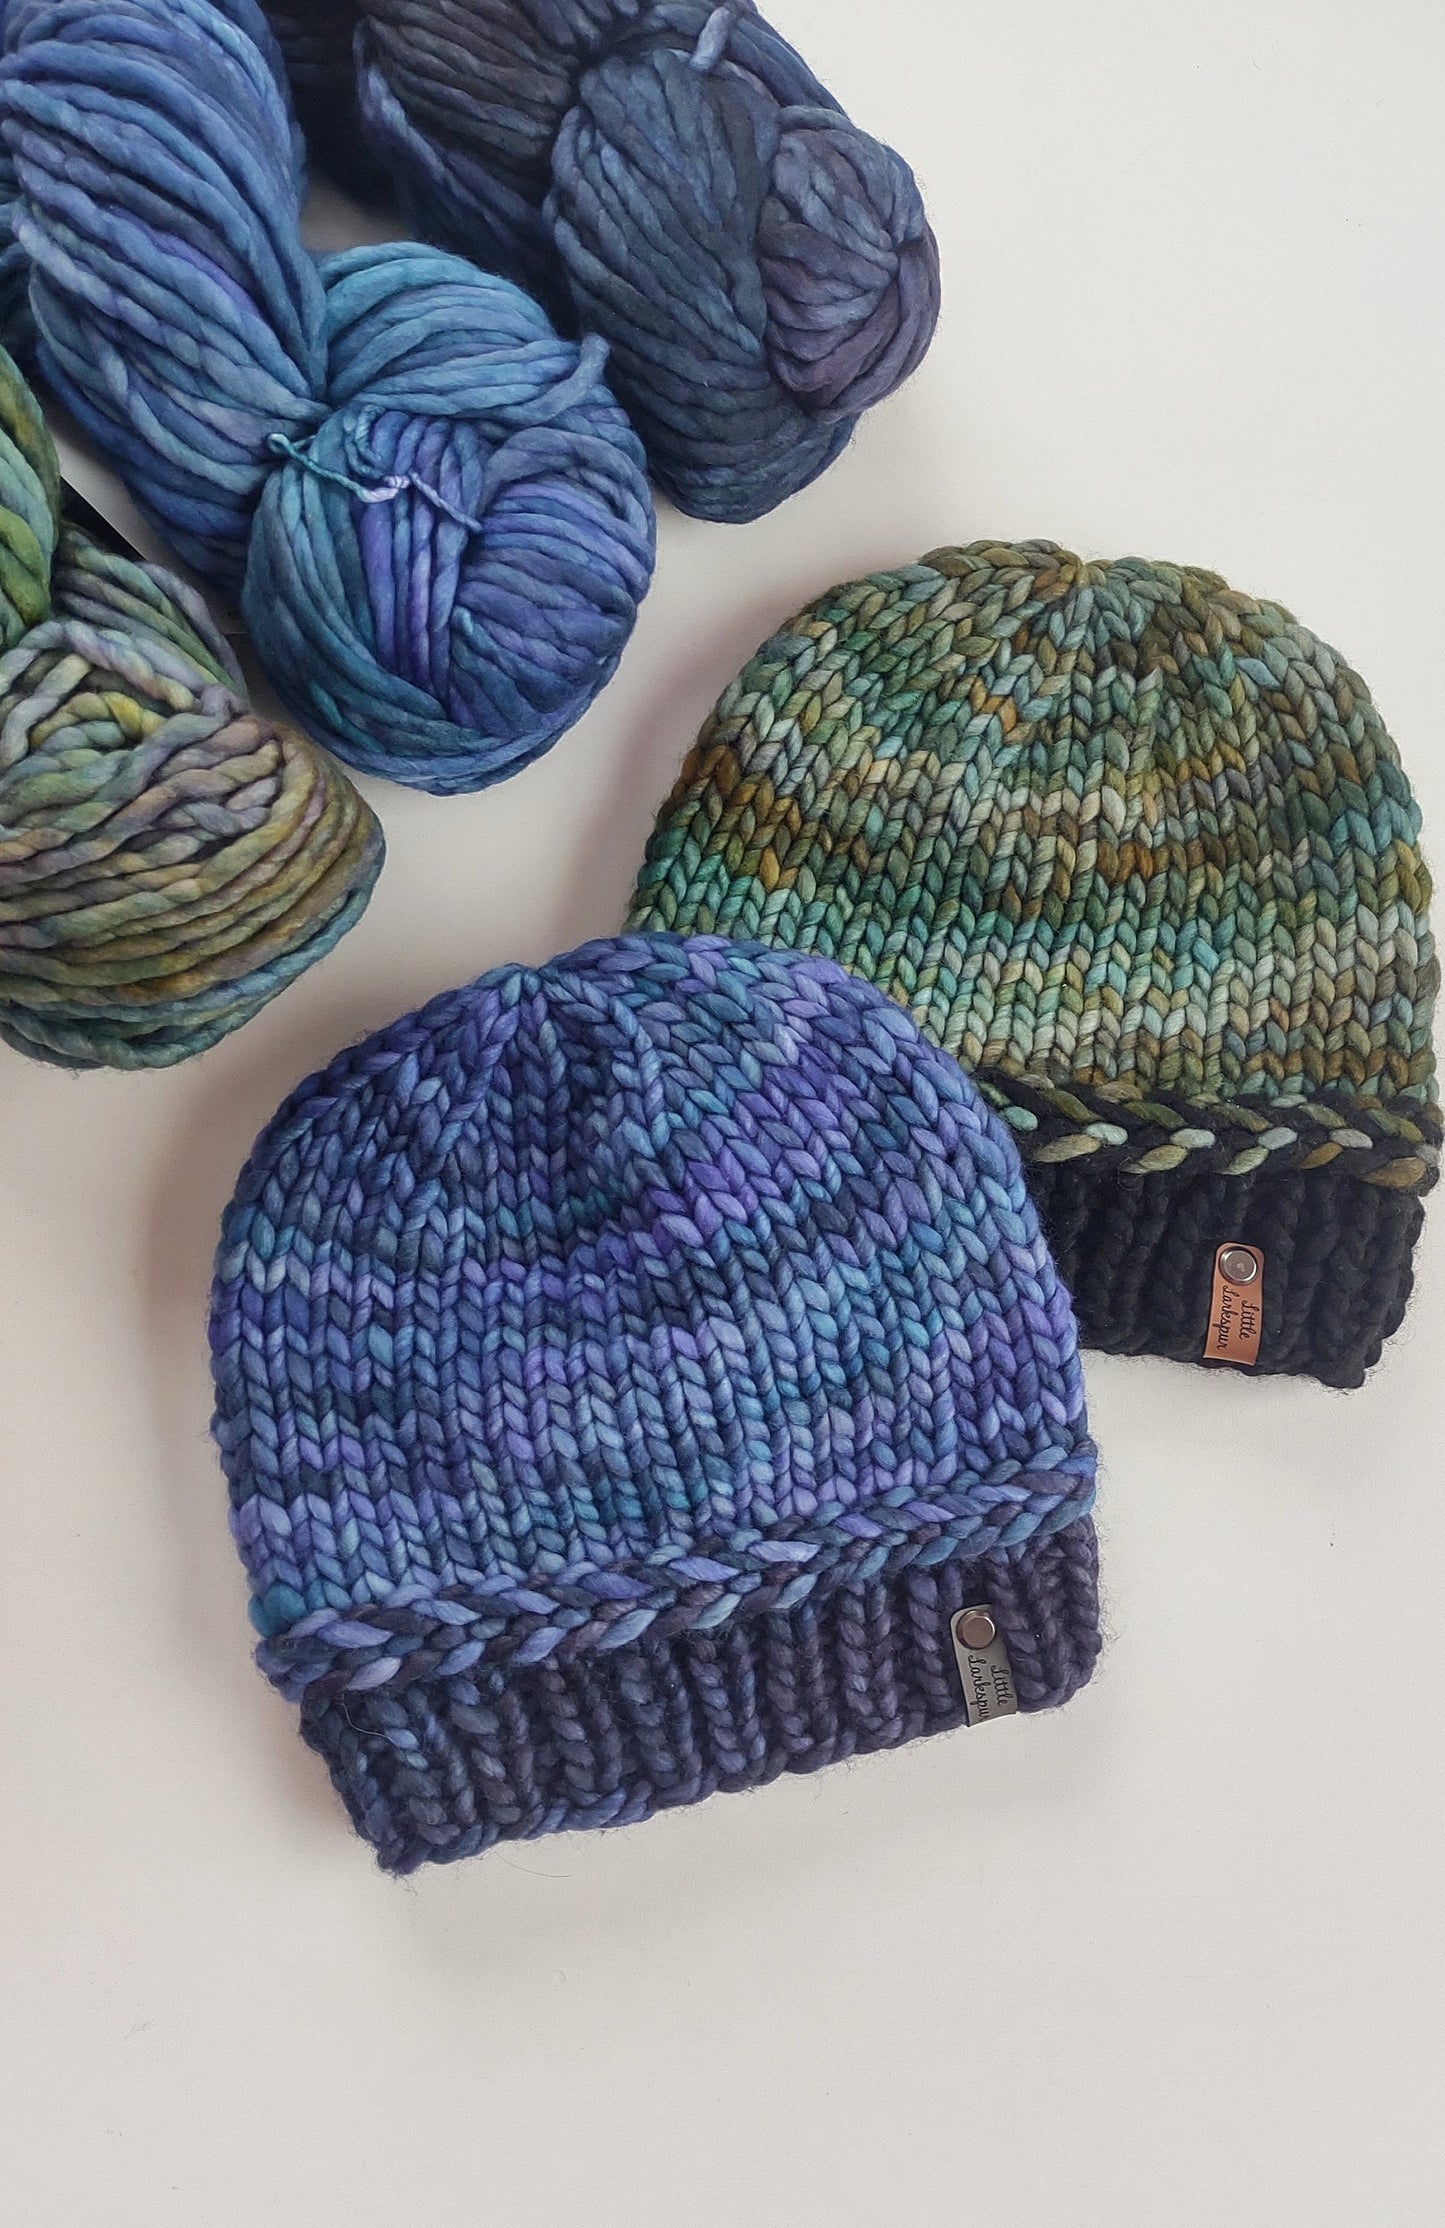 Tidal Crest KIDS Beanie Knitting PATTERN. Baby, Children Size Pattern. DIY Braided Brim Knit Hat Pattern. Handknit Hat. Advanced Beginner